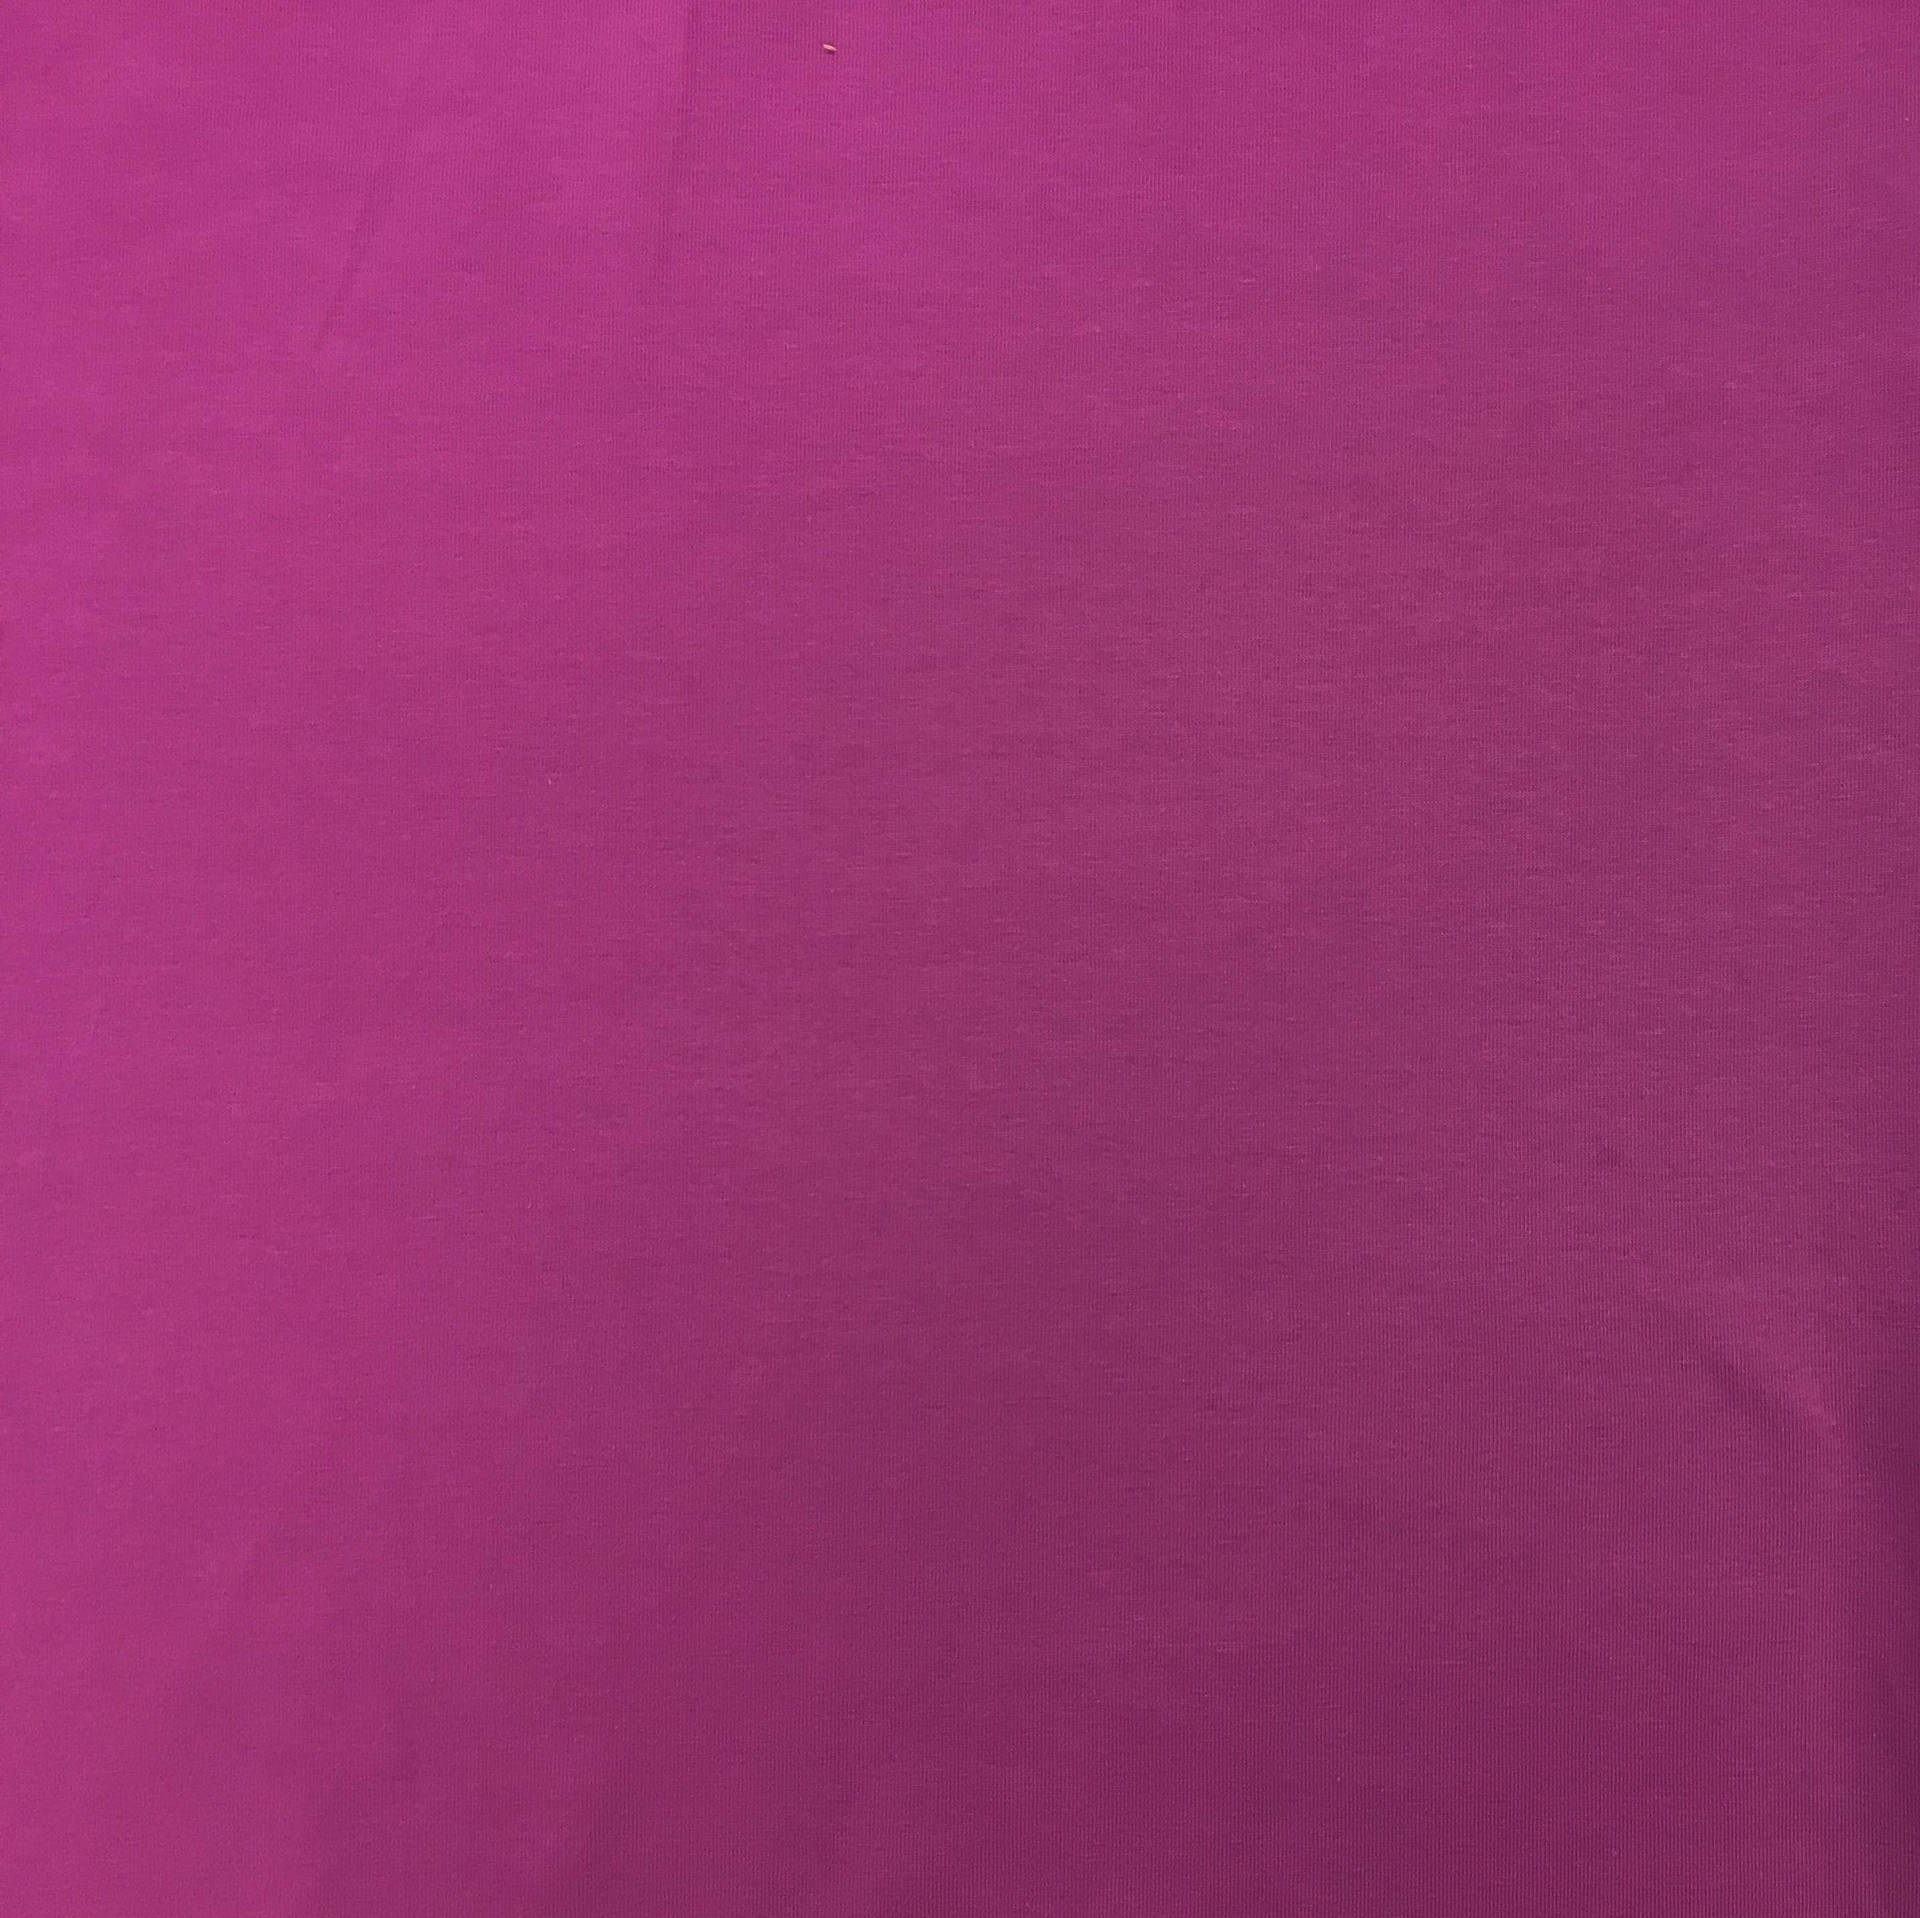 Plain Magenta Solid Color Wallpaper